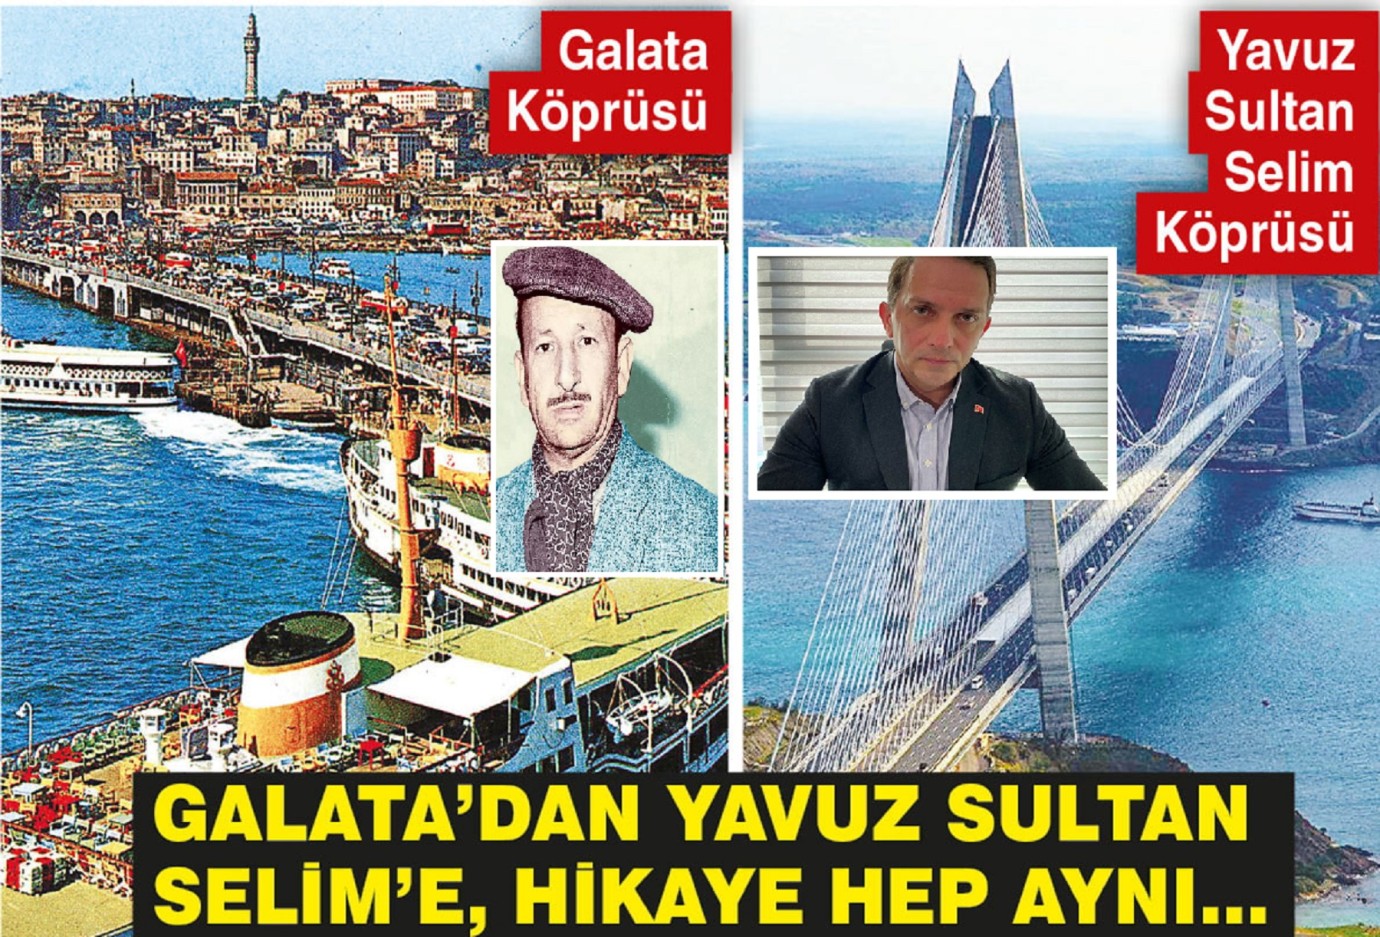 Sülün Osman gibi Yavuz Sultan Selim Köprüsü'nü satarak dev vurgun yaptılar